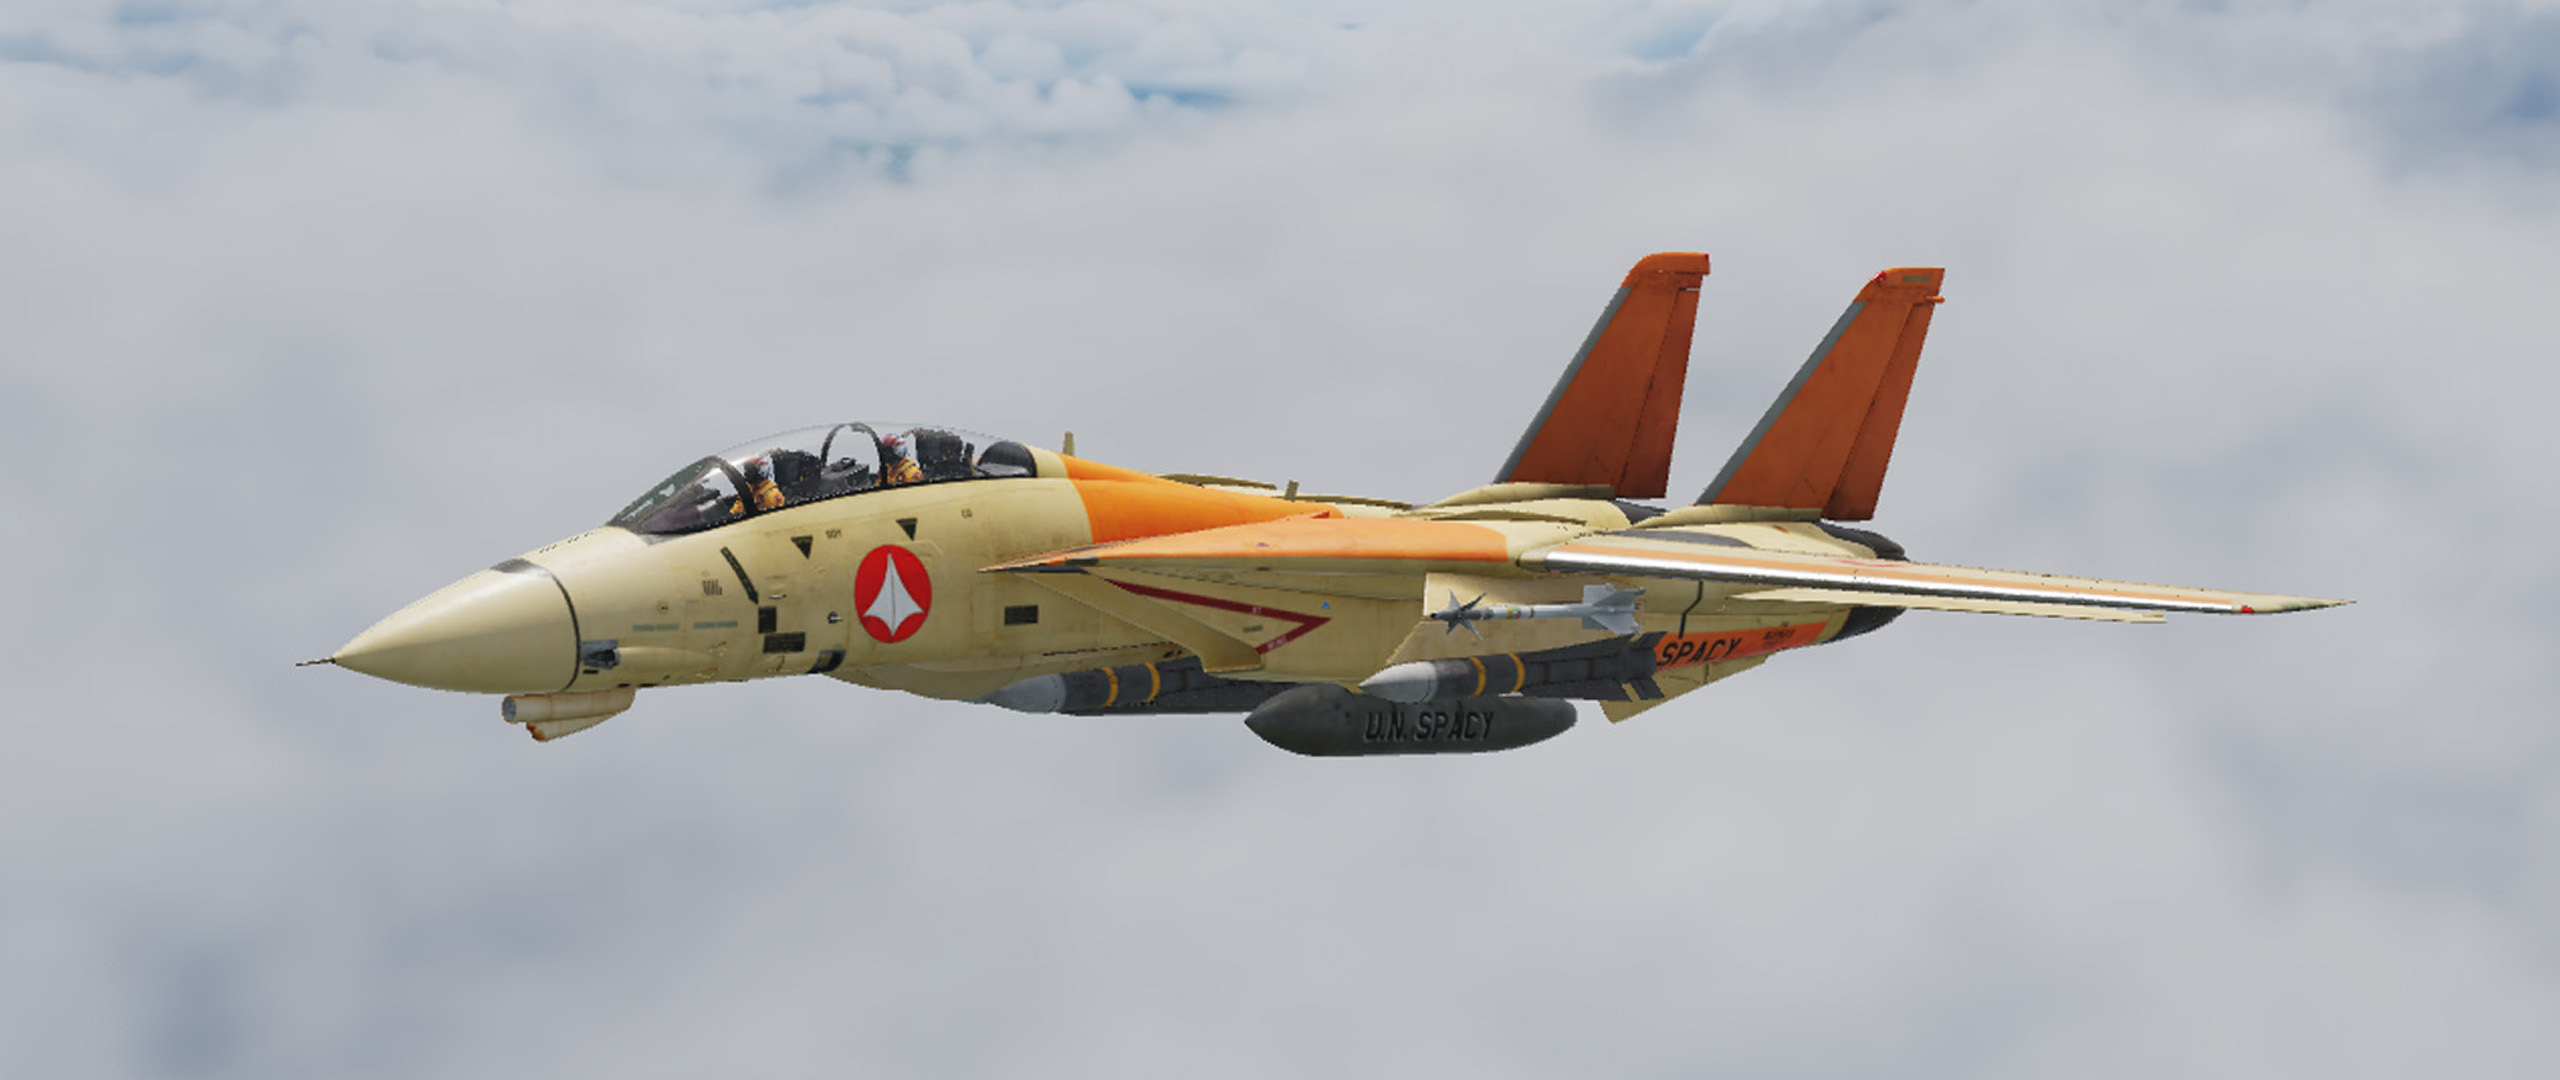 MACROSS/ROBOTECH TRAINER VF-1D F14 Tomcat